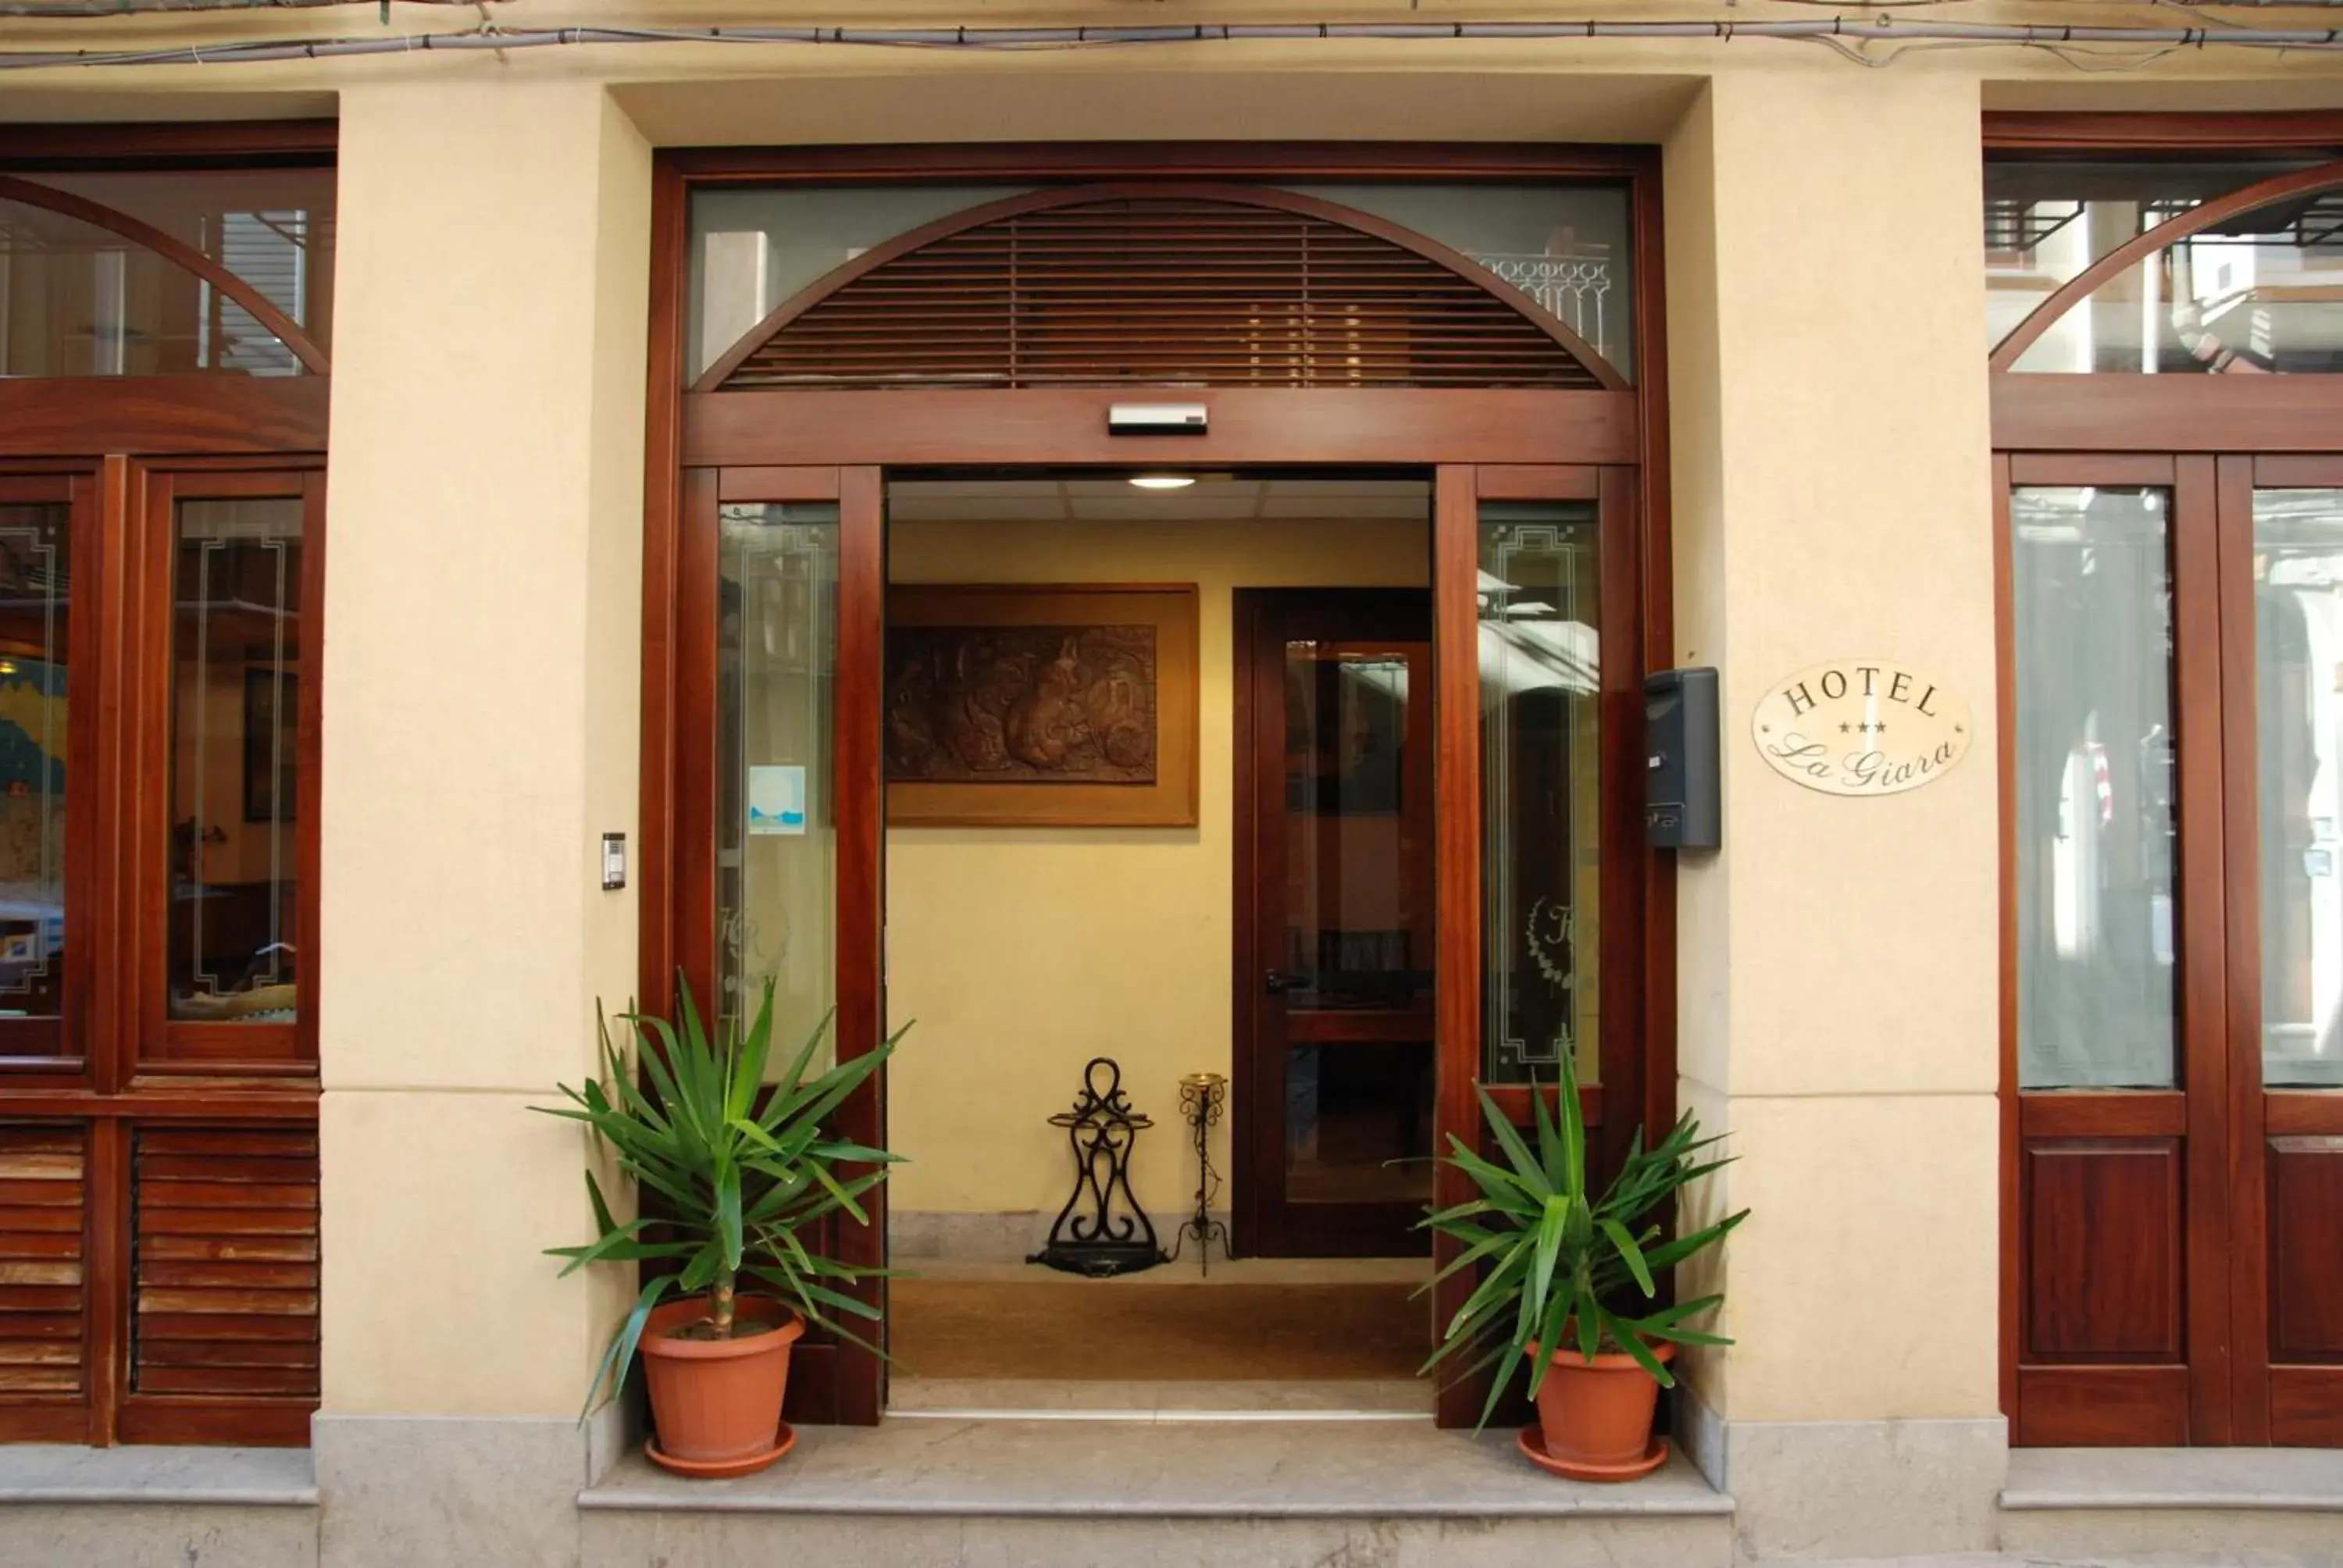 Facade/entrance in Hotel La Giara